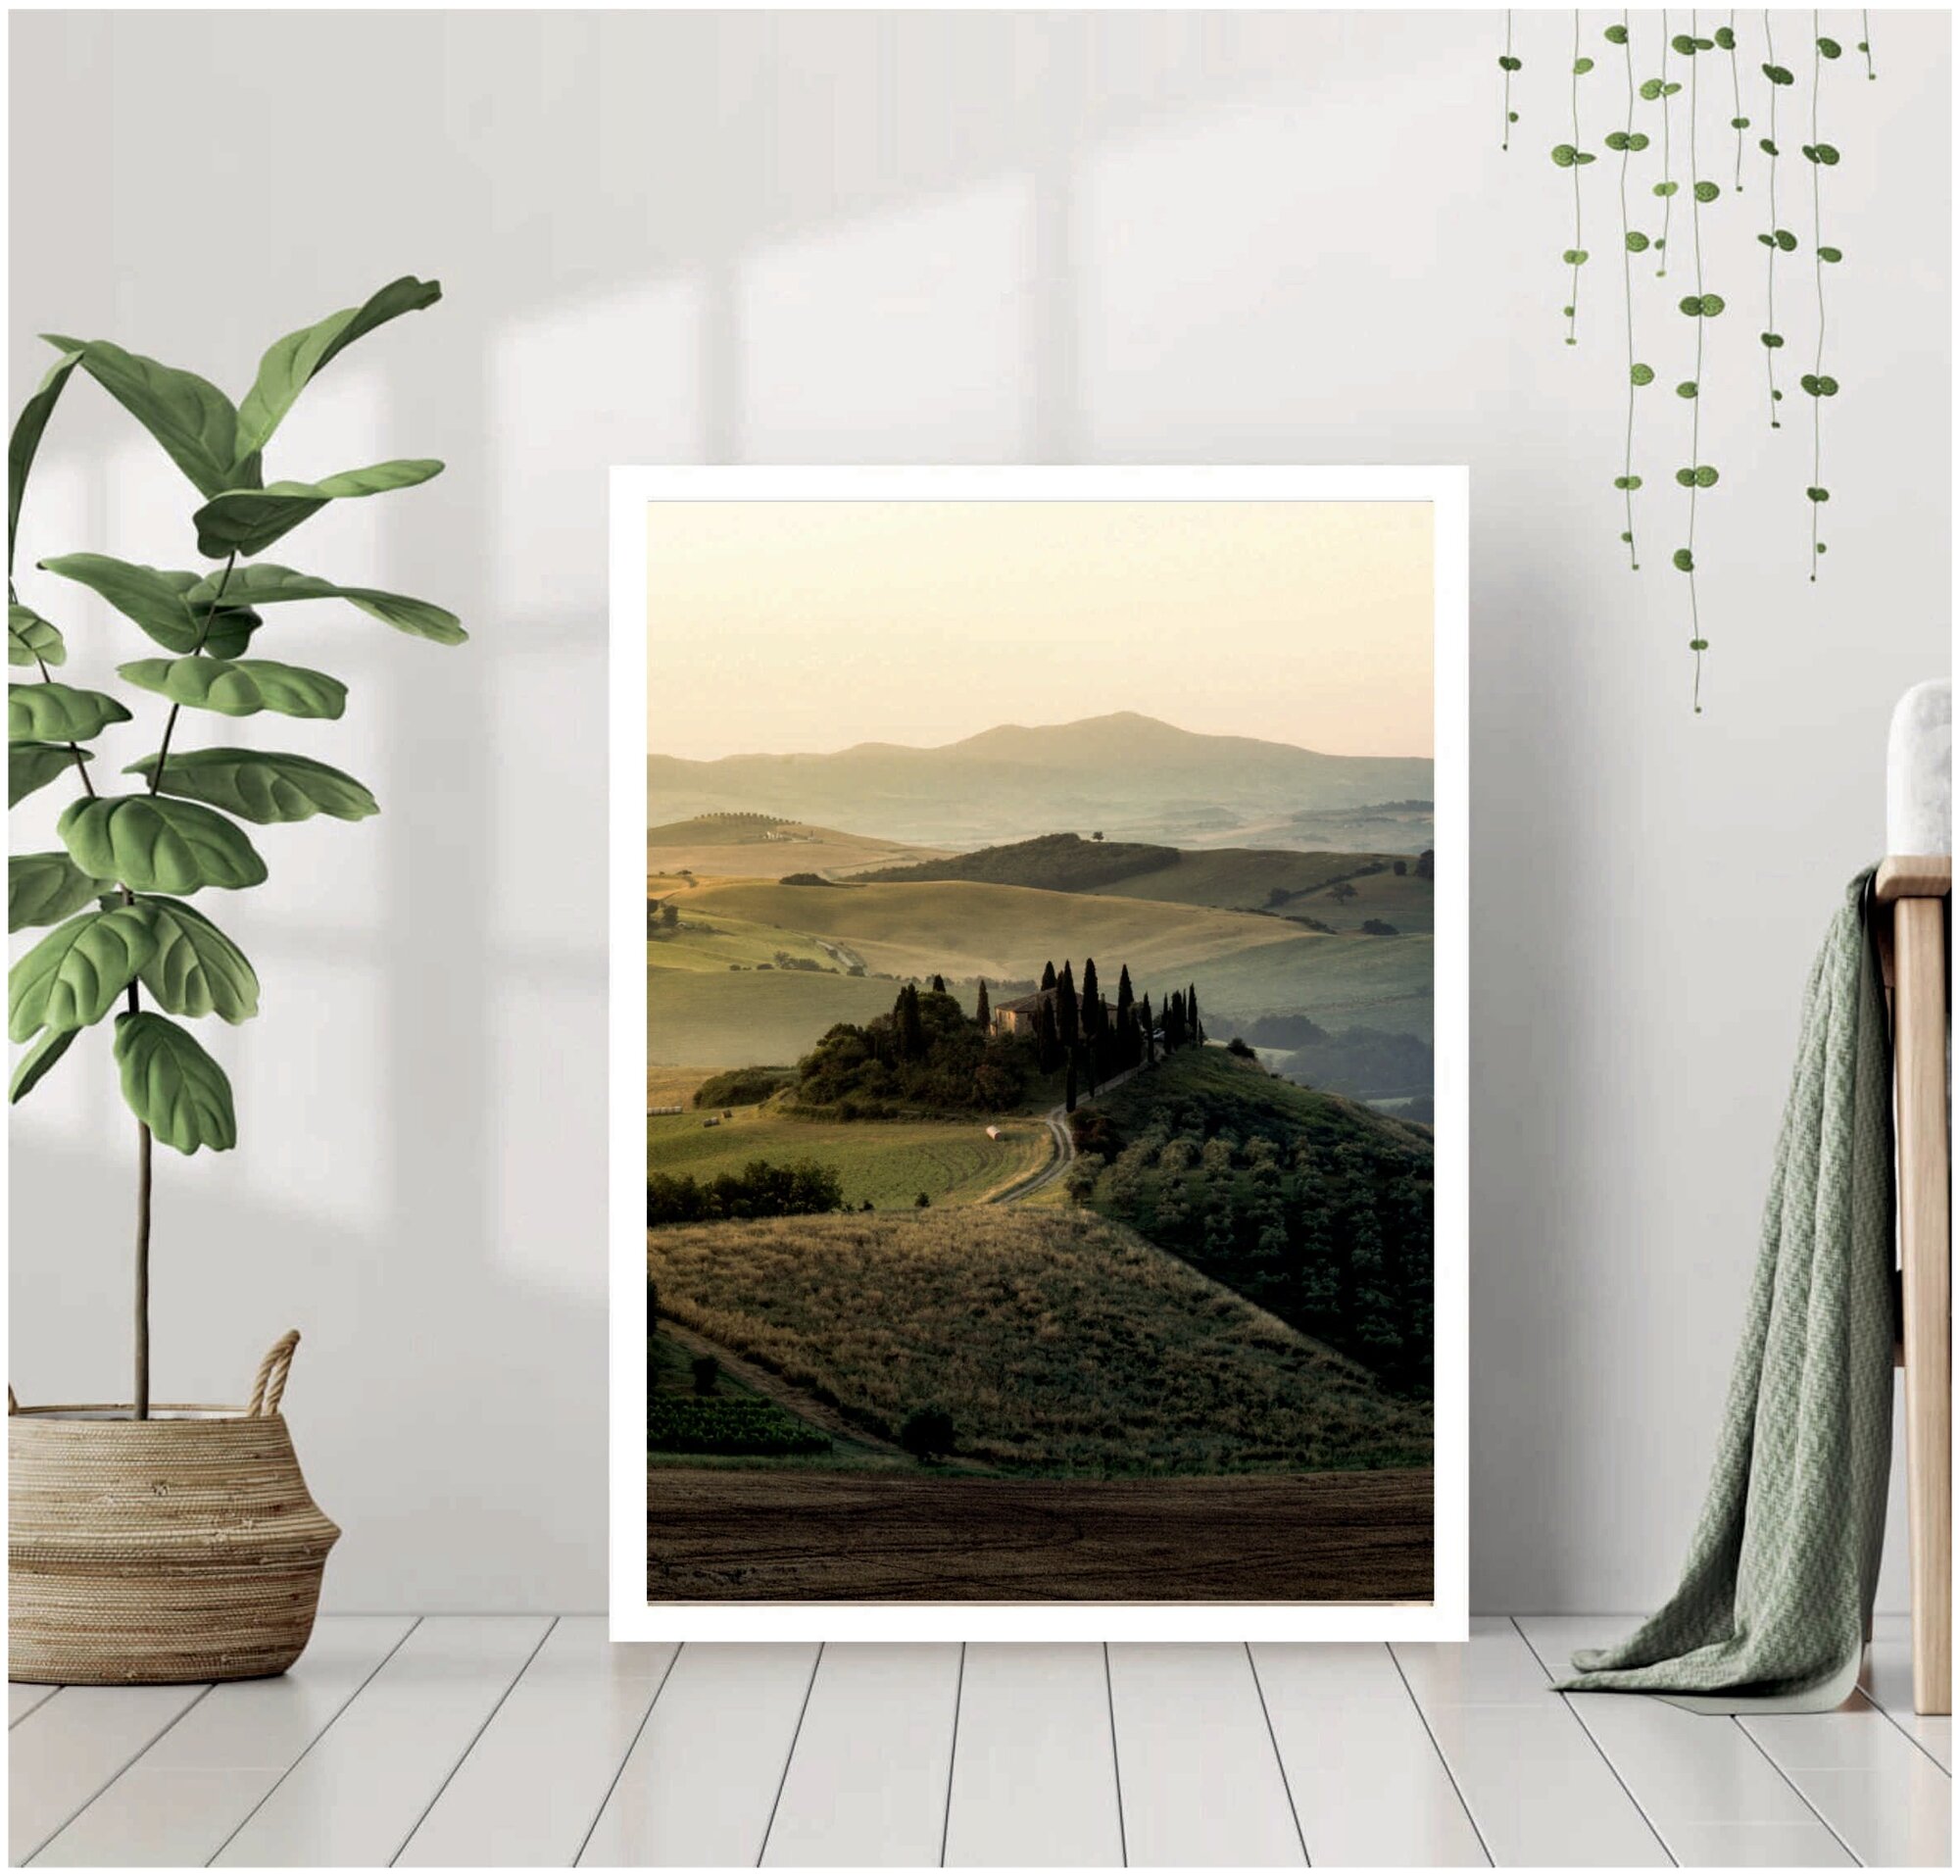 Постер В рамке "Пейзаж поля Тосканы, Италия" 40 на 50 (белая рама) / Картина для интерьера / Плакат / Постер на стену / Интерьерные картины